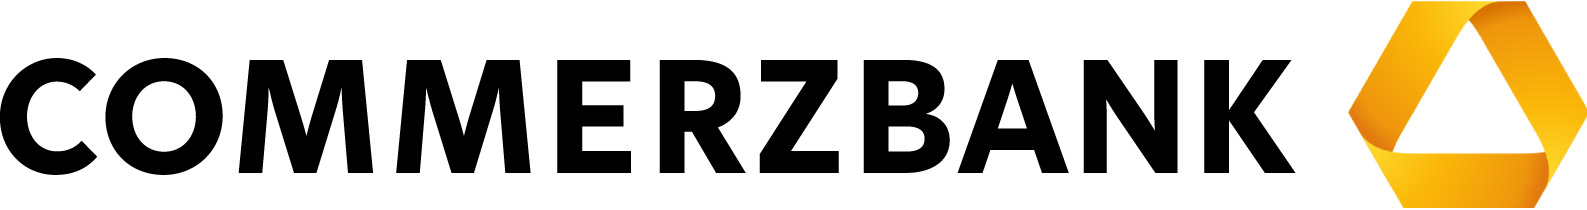 Логотип корпорации Commerzbank